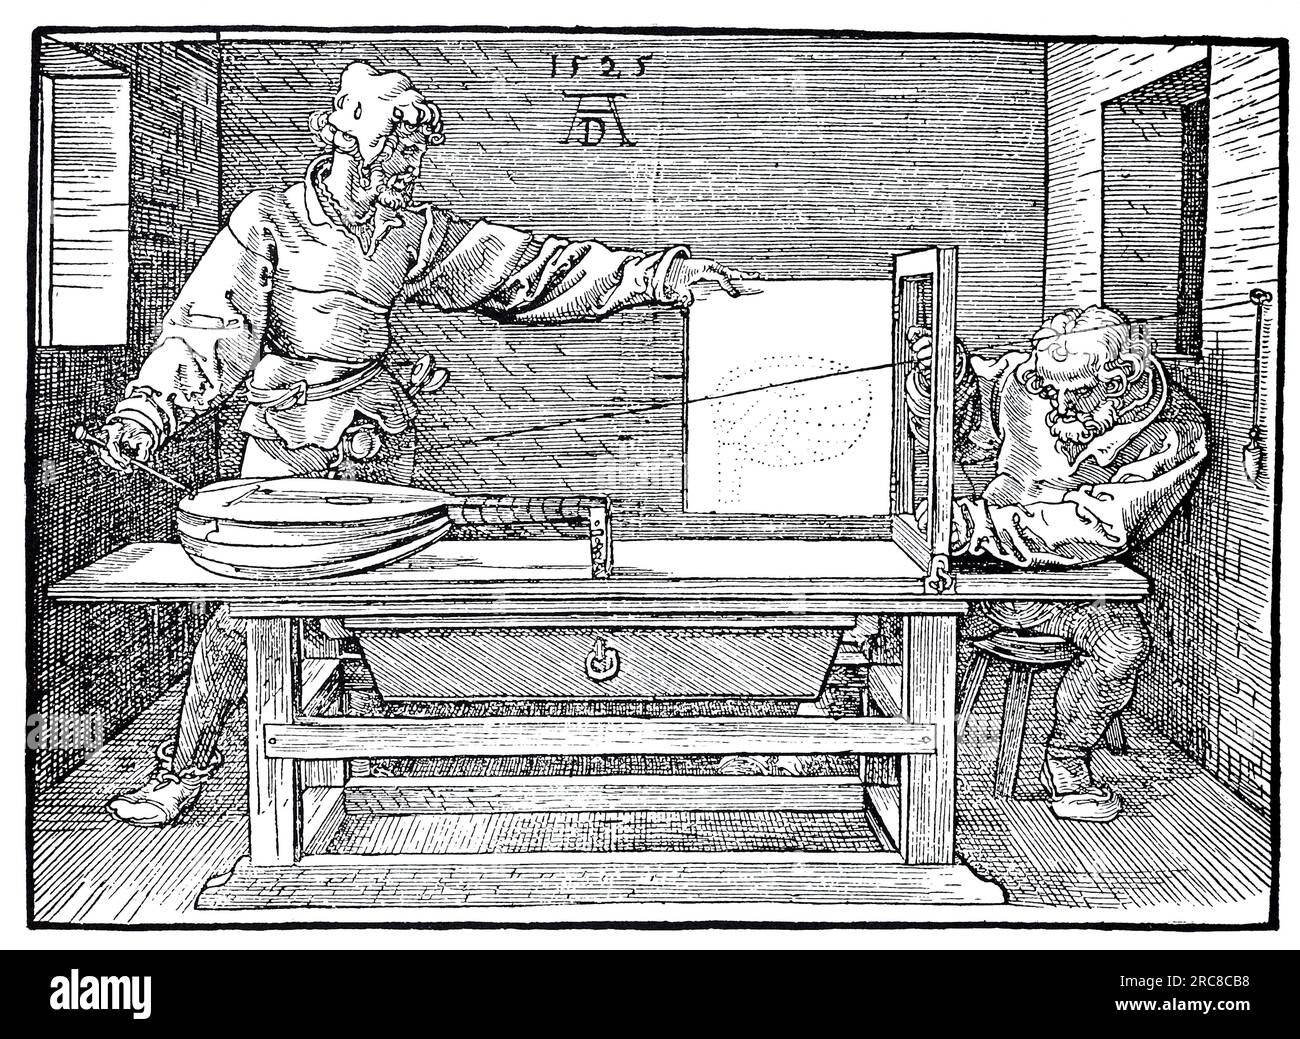 Über die Kunst der Messung. Ein Mann, der eine Laute malt, Holzschnitt von Albrecht Dürer, historische, digitale, verbesserte Reproduktion eines alten Holzschnitts Stockfoto